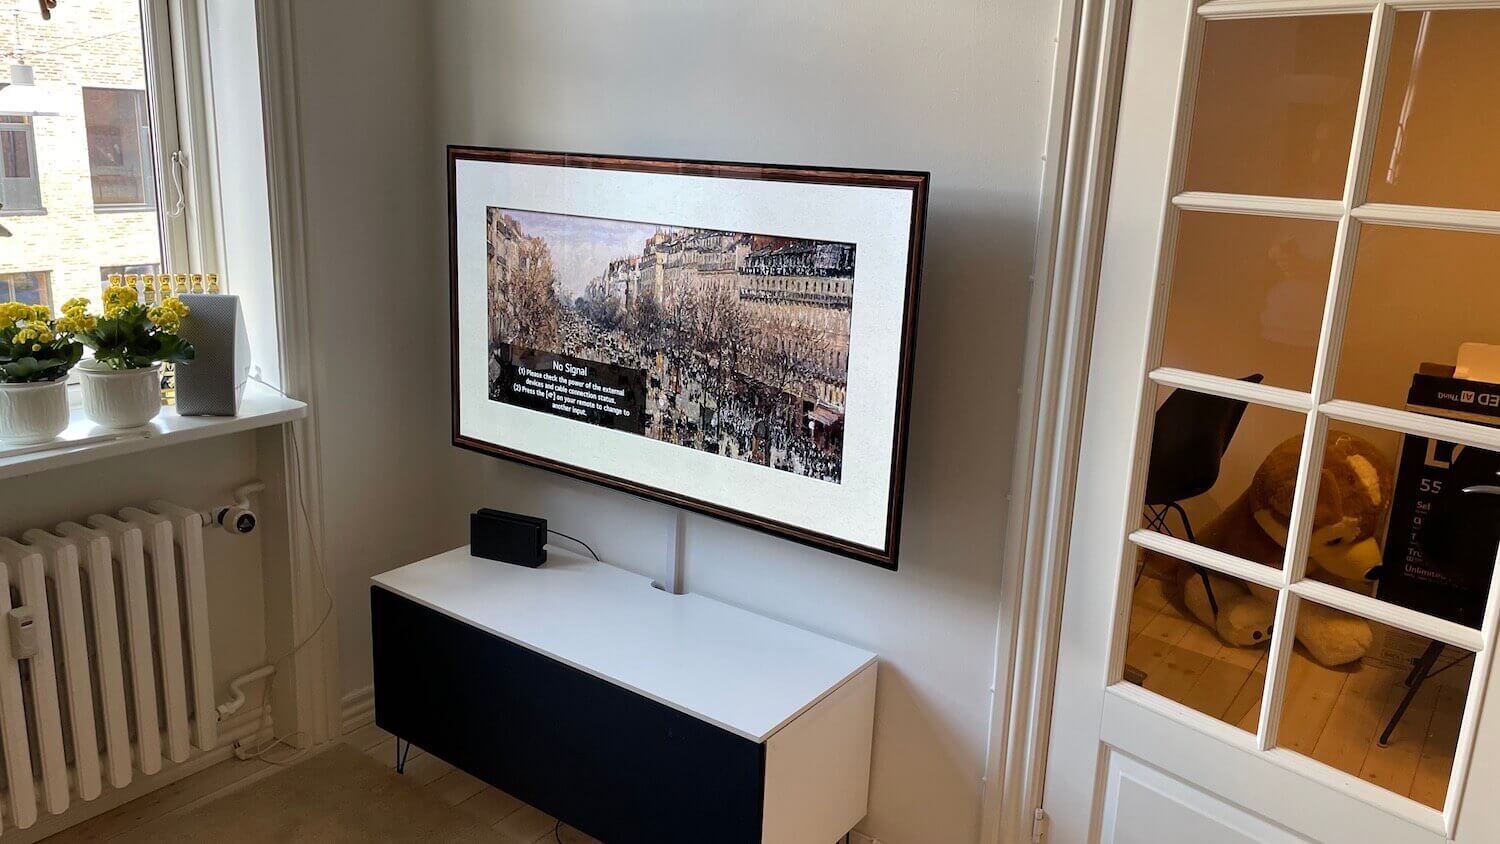 Installation af 55 LG OLED TV på et vægbeslag med drejefunktion